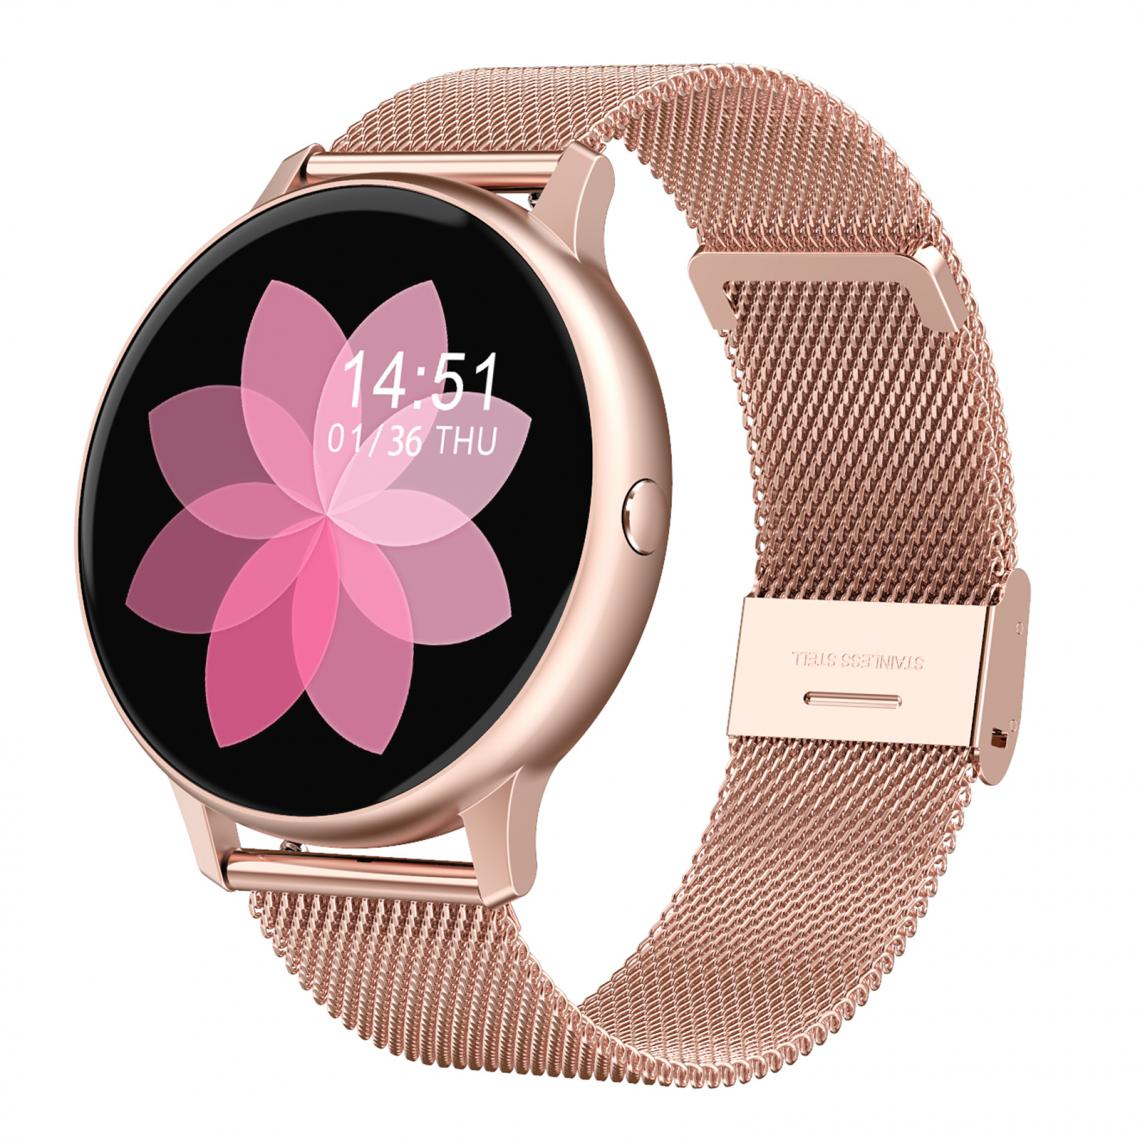 marque generique - DT88 PRO Smart Watch Moniteur De Fréquence Cardiaque ECG Pour IOS Android Silicone Blanc - Montre connectée